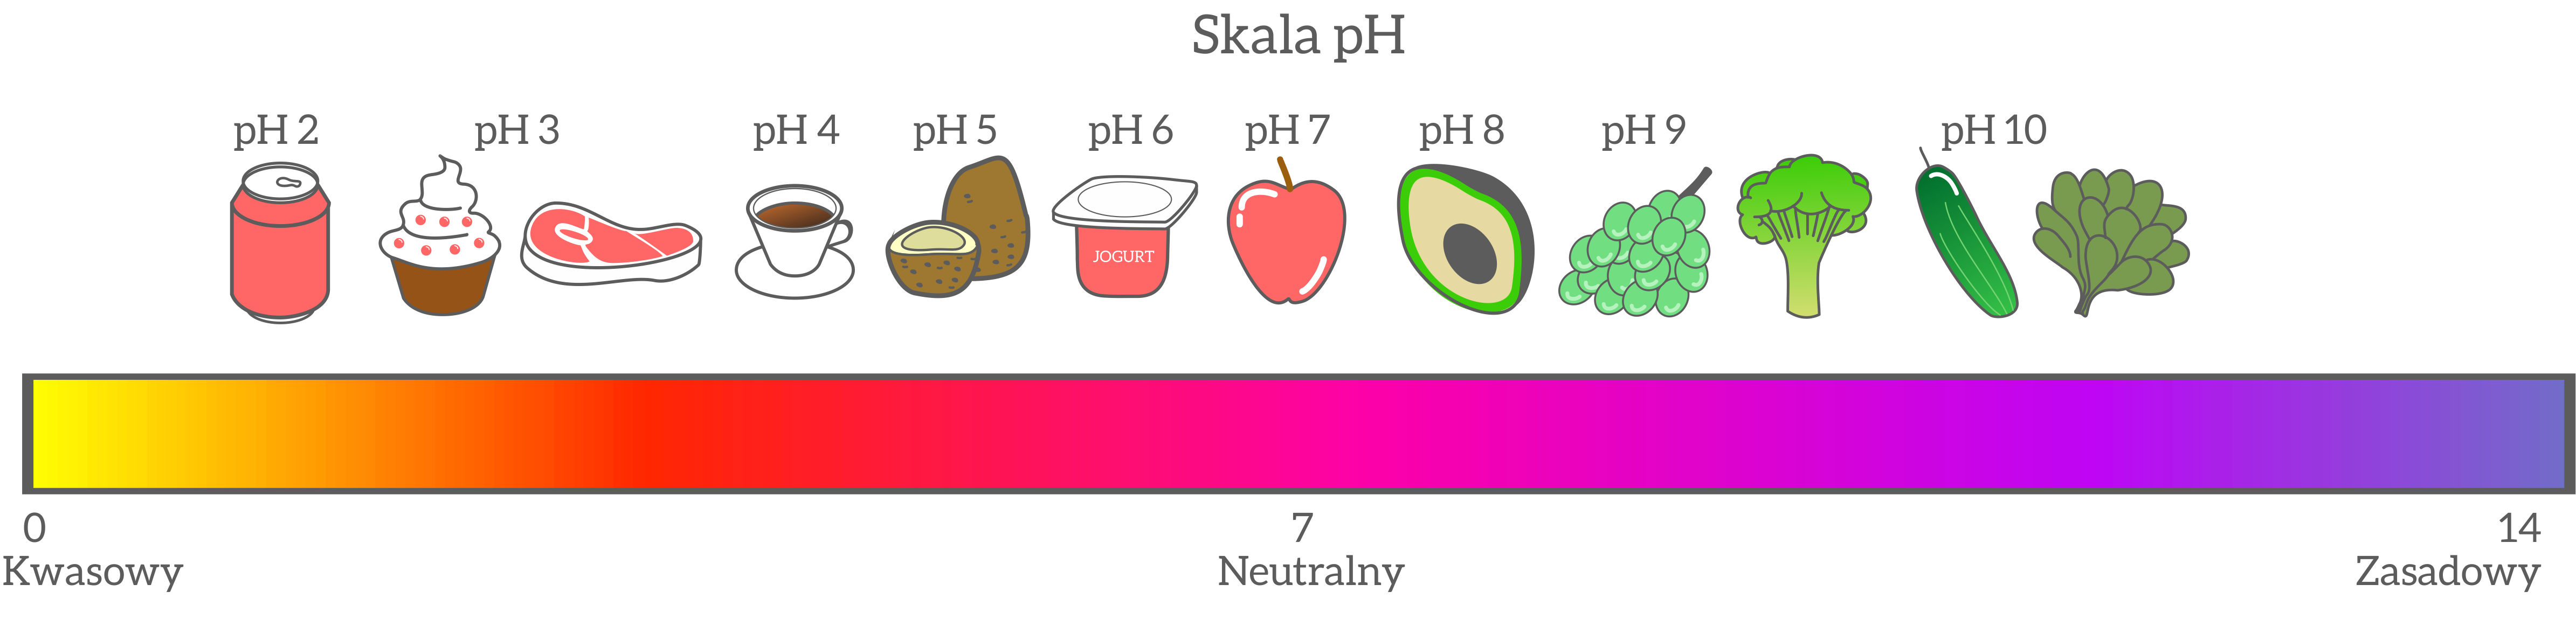 Na rysunku skali pH przedstawiono odczyn produktów spożywczych. Najbardziej kwaśny jest napój typu cola o pH równym 2. Mniej kwaśne są ciastka, mięso, kawa i jogurt. Neutralne pH ma jabłko. Ogórek i kalafior mają zasadowy odczyn bliski 10.